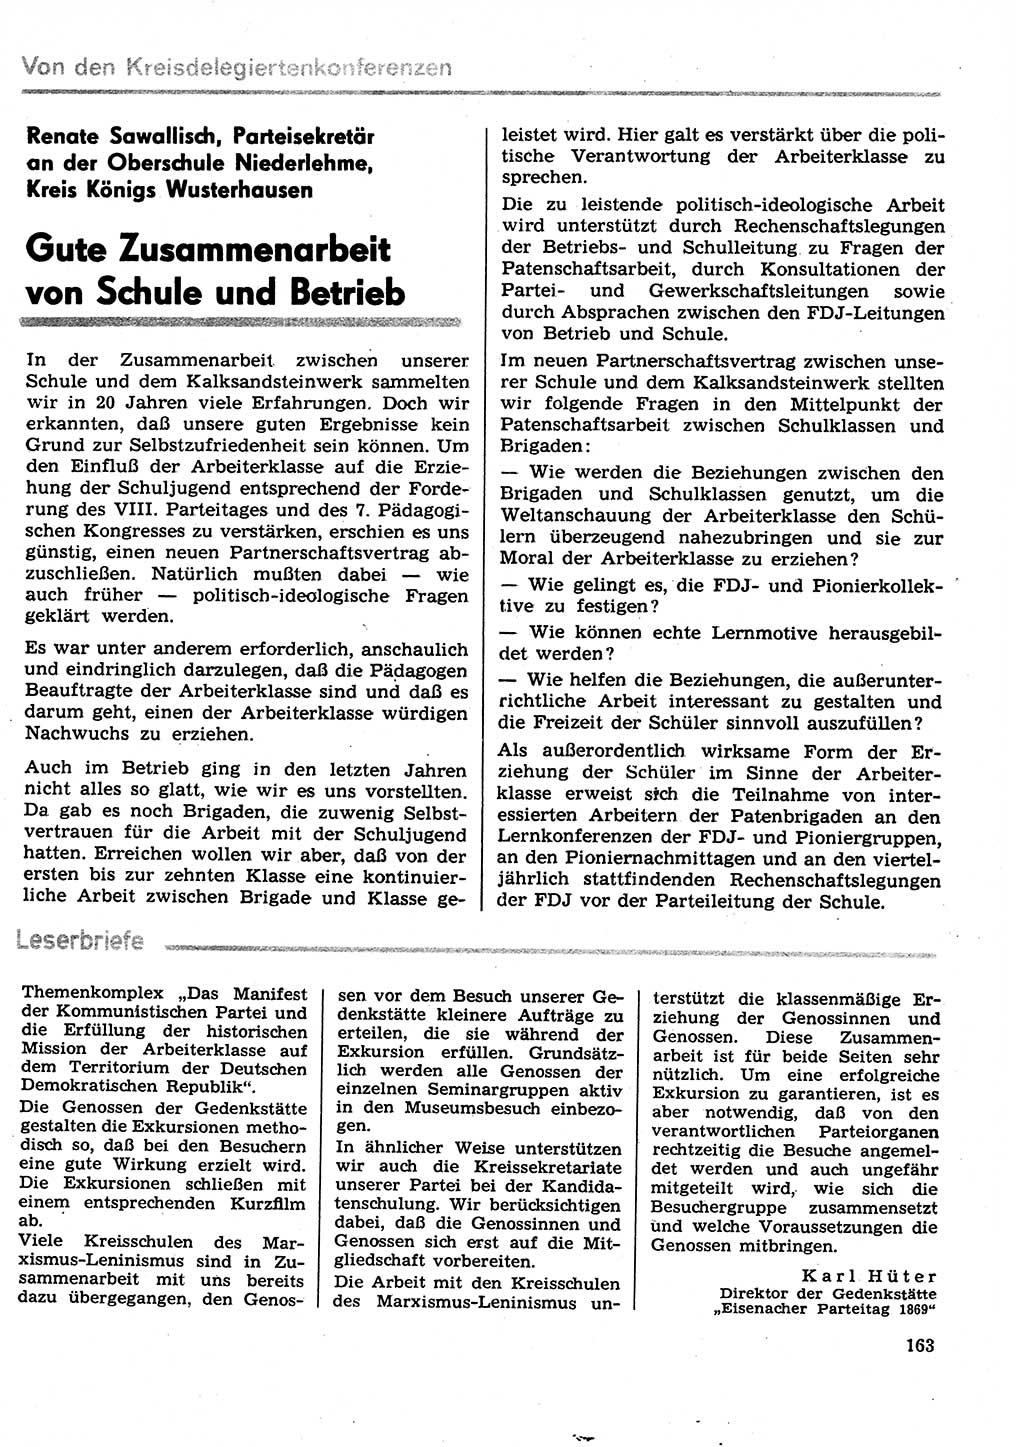 Neuer Weg (NW), Organ des Zentralkomitees (ZK) der SED (Sozialistische Einheitspartei Deutschlands) für Fragen des Parteilebens, 29. Jahrgang [Deutsche Demokratische Republik (DDR)] 1974, Seite 163 (NW ZK SED DDR 1974, S. 163)